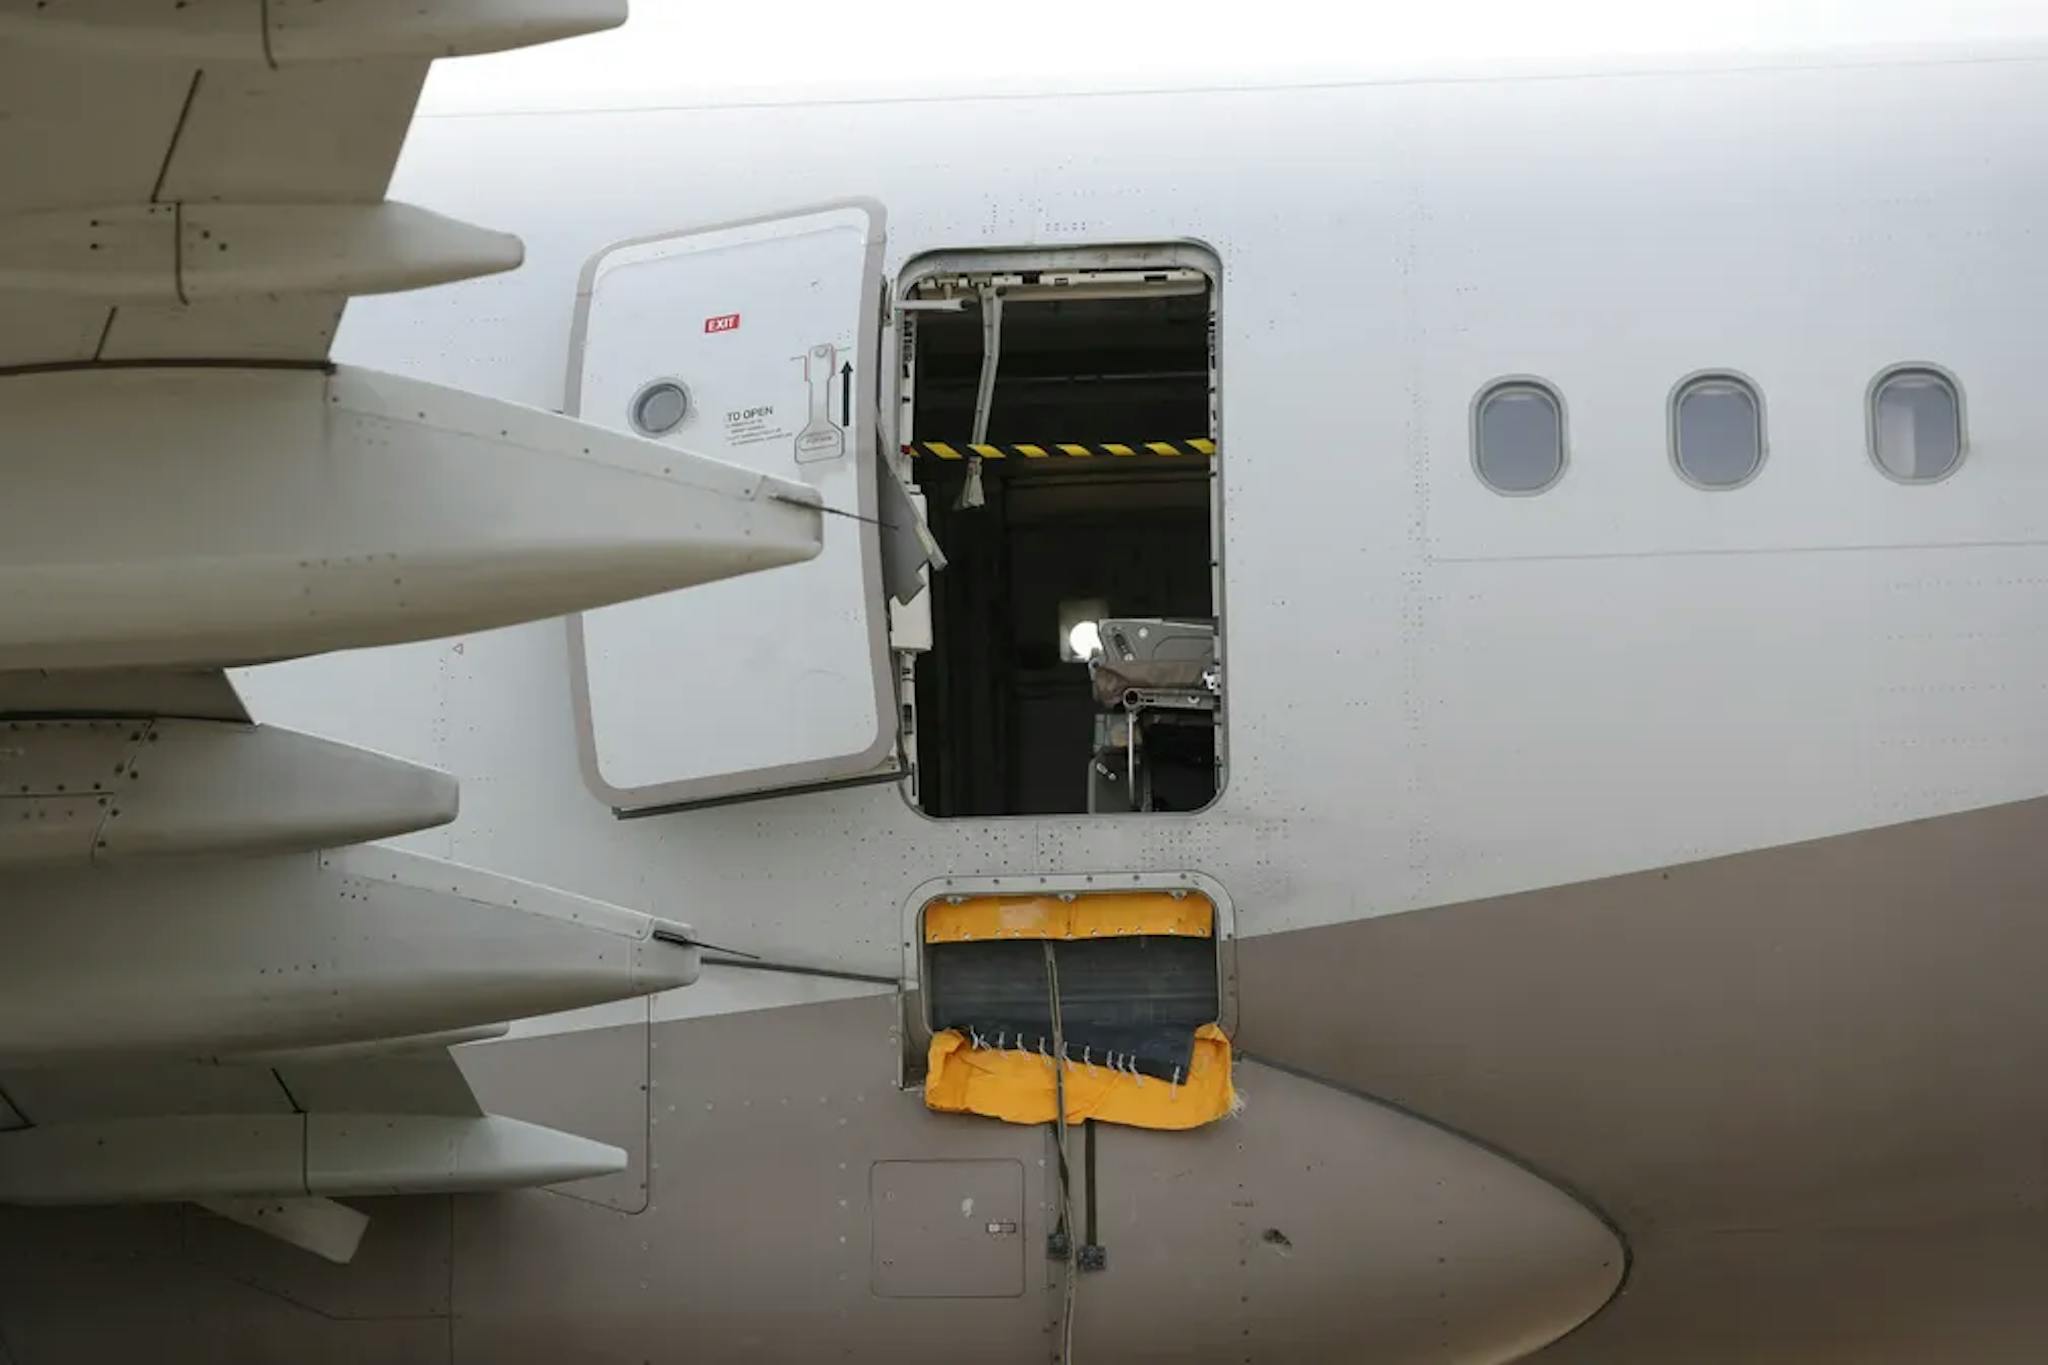 Porta do avião se abriu antes do pouso